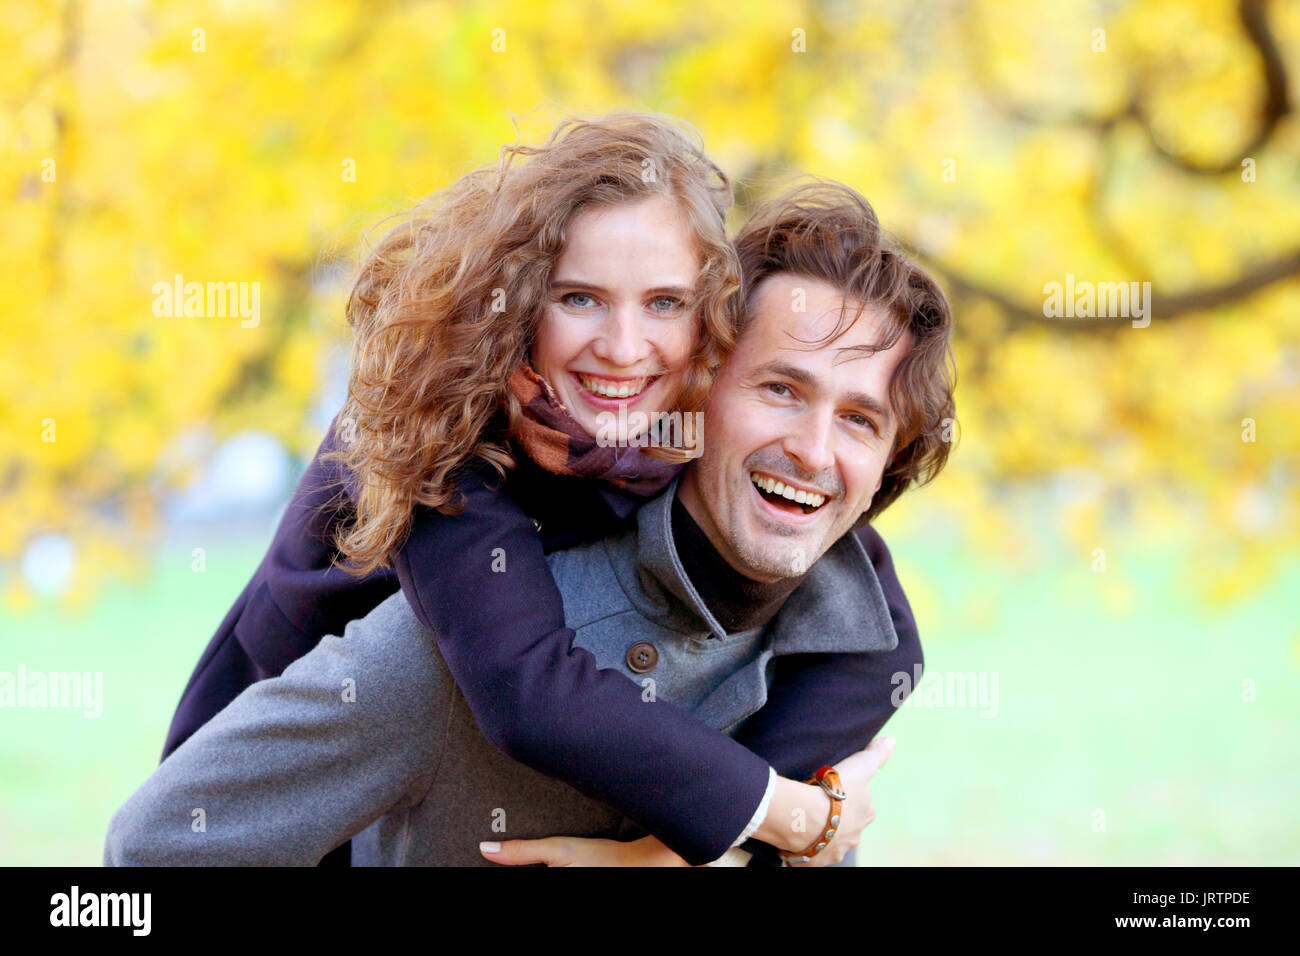 L'amour, les relations, la saison et les gens concept - happy young couple having fun in autumn park piggyback ride Banque D'Images